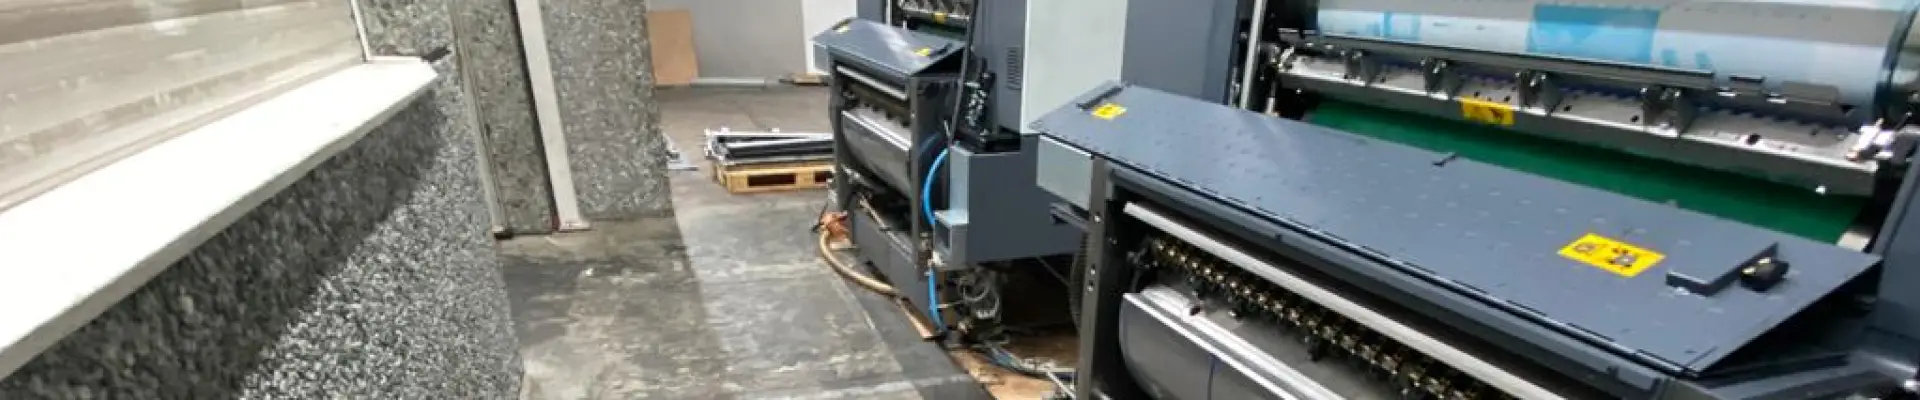 Druckmaschinenreinigung mit Trockeneisstrahlverfahren